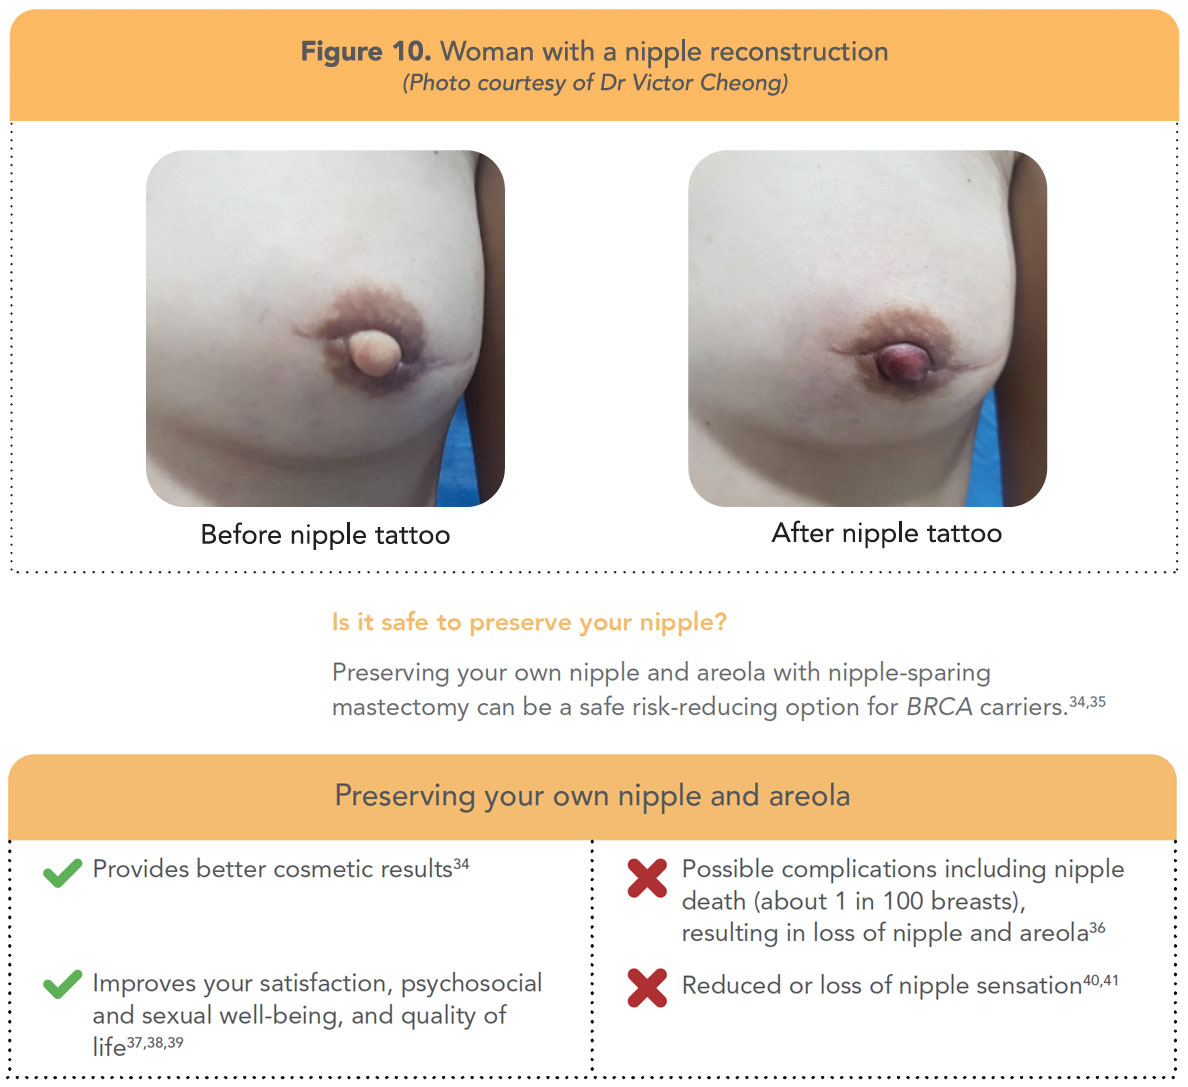 Will Sensation Return After Nipple Reconstruction?